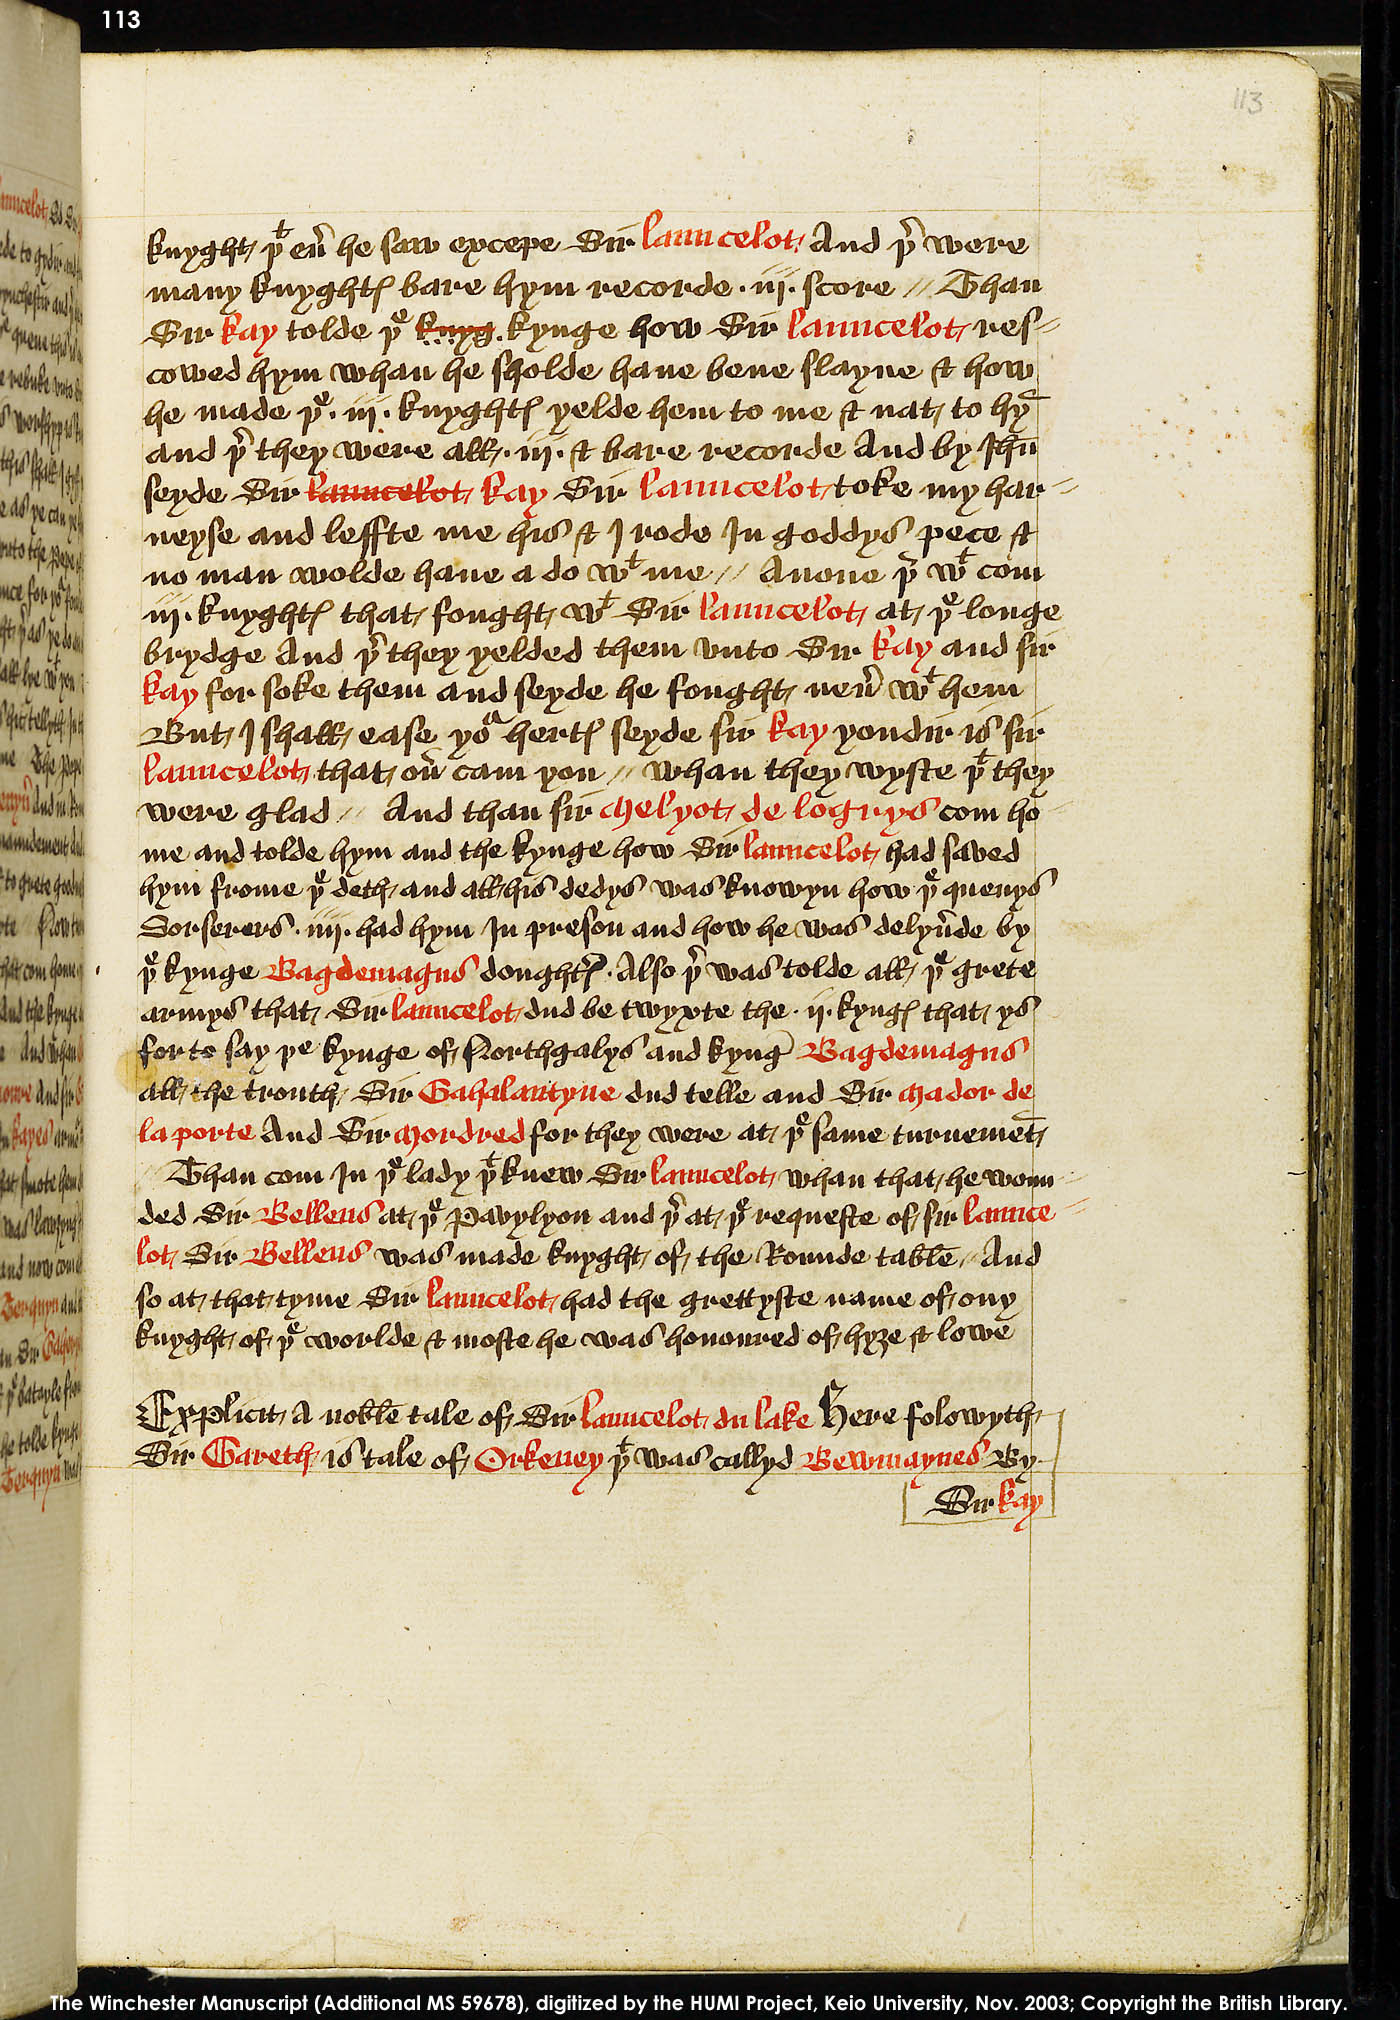 Folio 113r